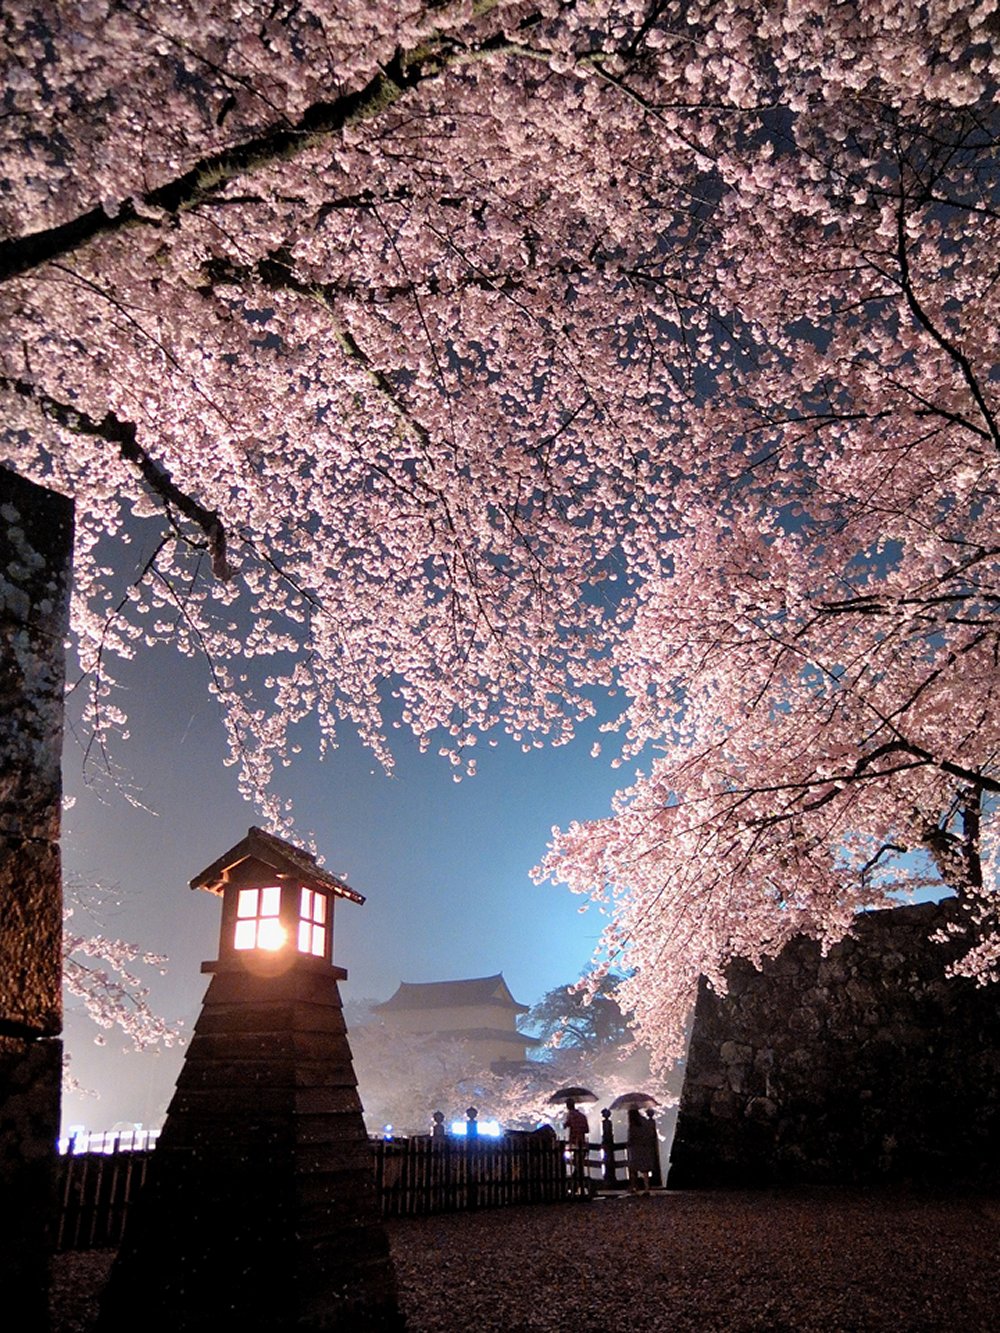 彦根城 桜のライトアップ 彦根観光ガイド 公益社団法人 彦根観光協会